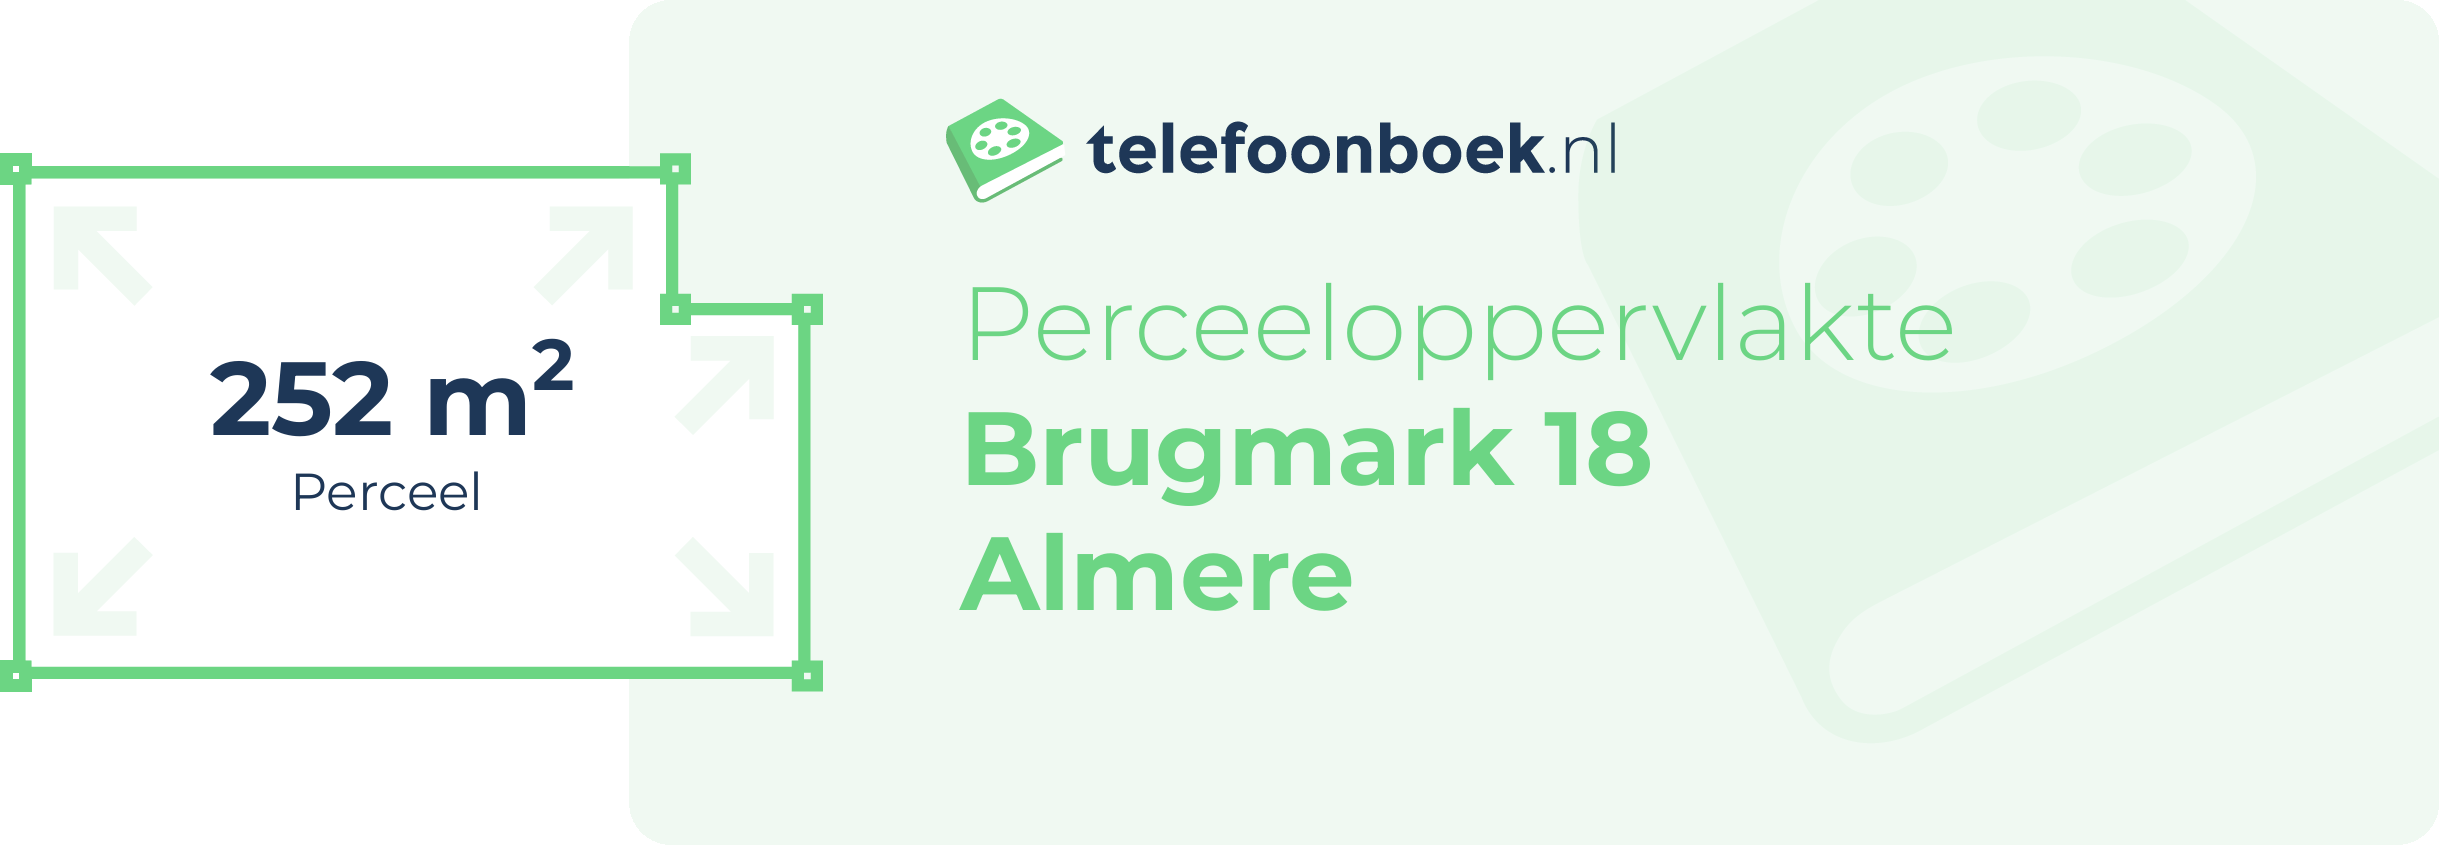 Perceeloppervlakte Brugmark 18 Almere